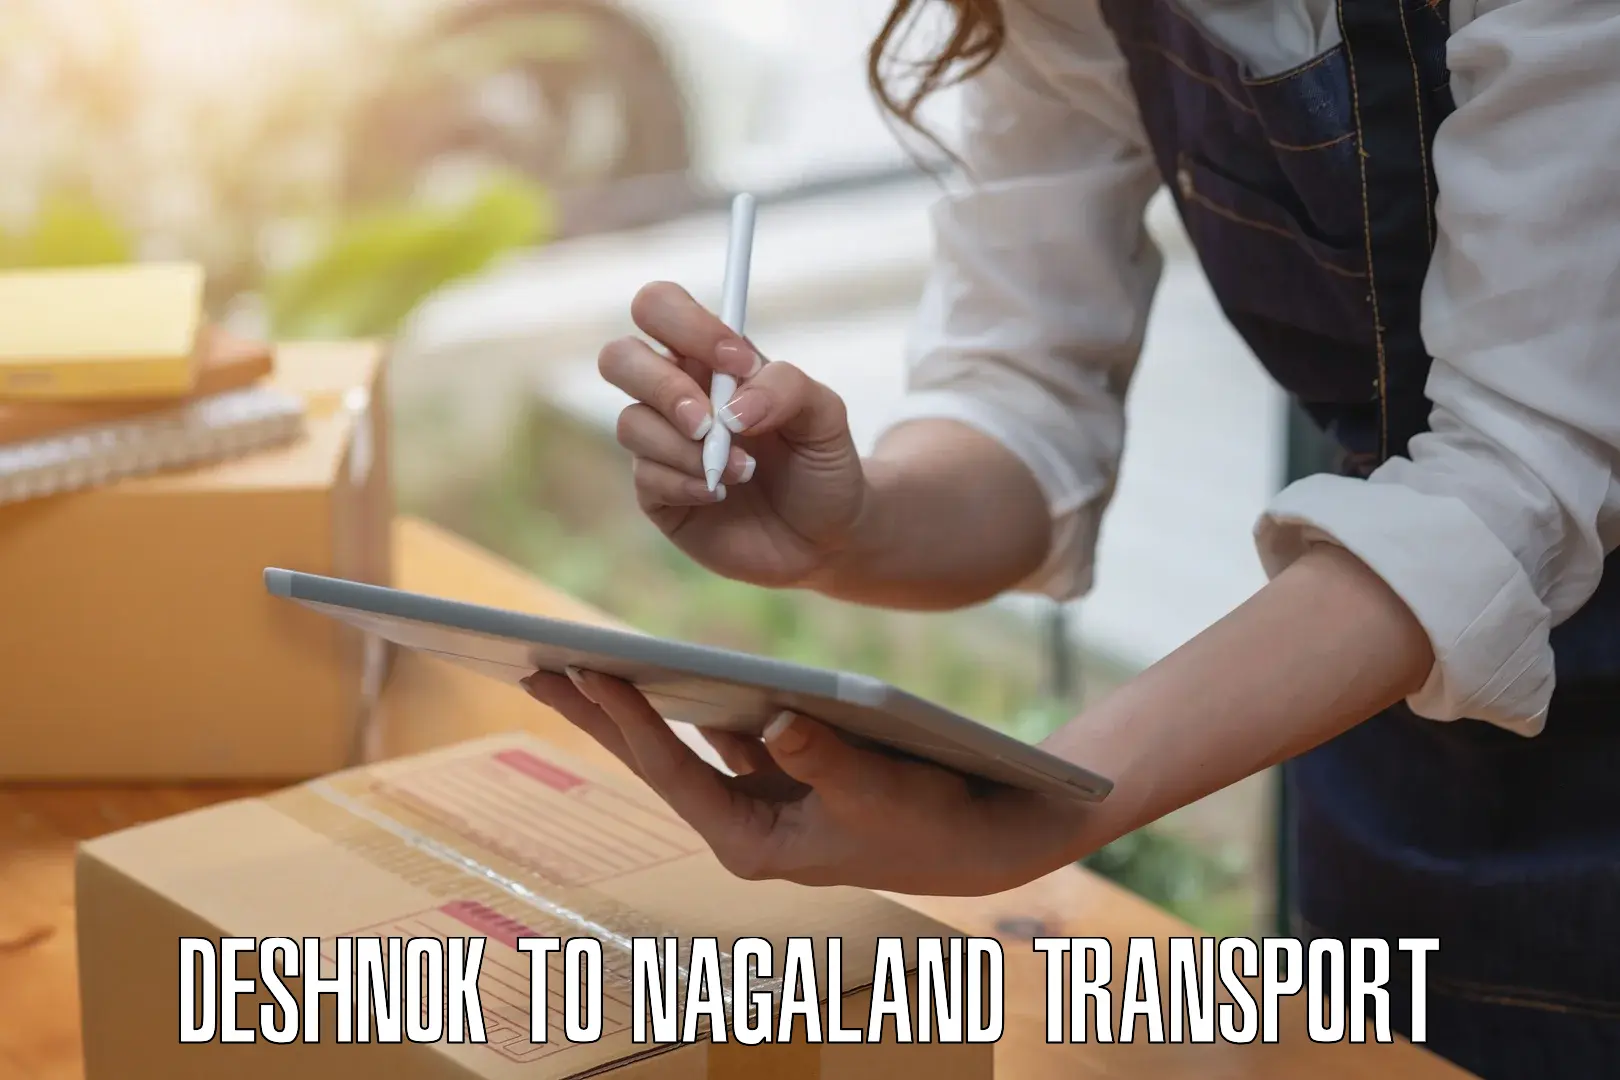 Interstate transport services Deshnok to Nagaland